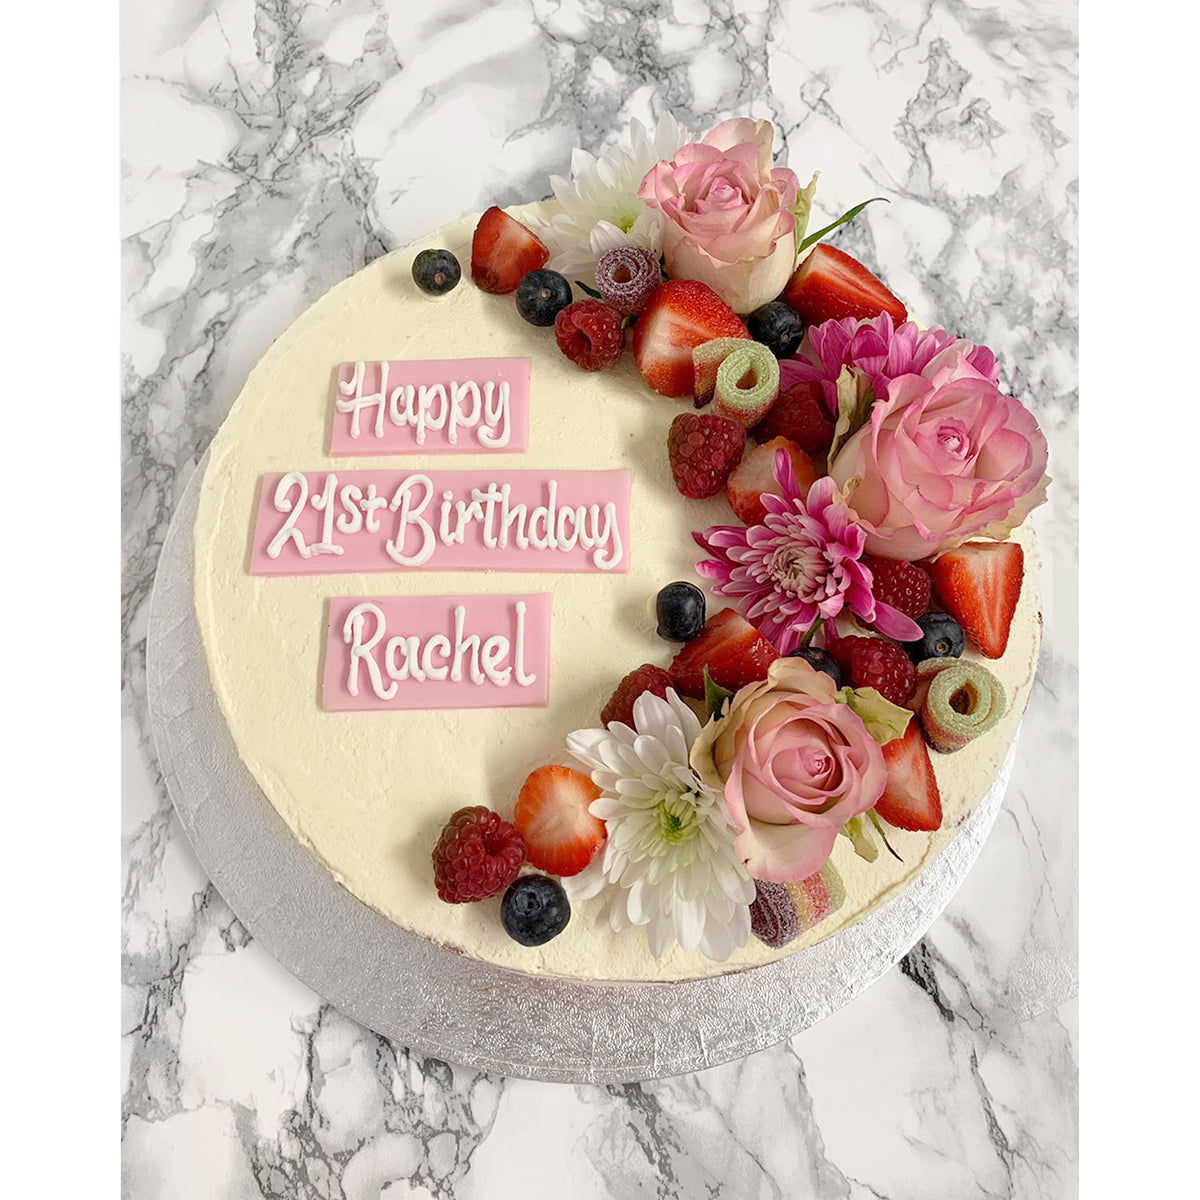 Vegan Celebration Cake with Fresh Flowers & Fruit